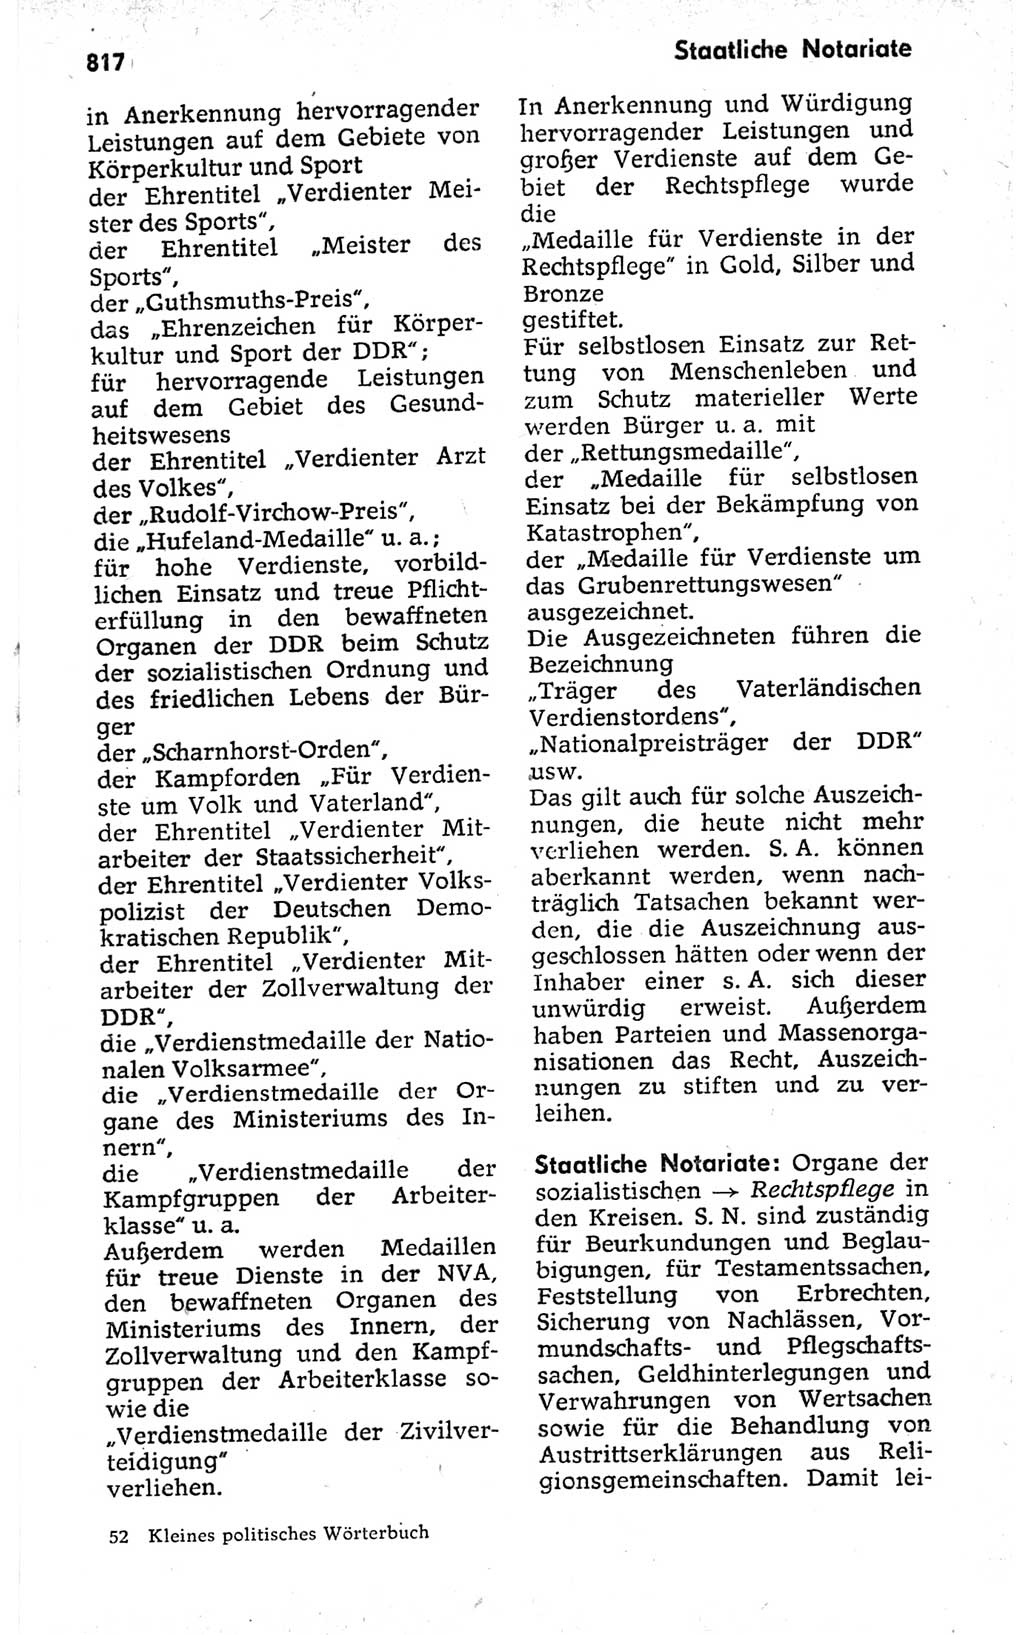 Kleines politisches Wörterbuch [Deutsche Demokratische Republik (DDR)] 1973, Seite 817 (Kl. pol. Wb. DDR 1973, S. 817)